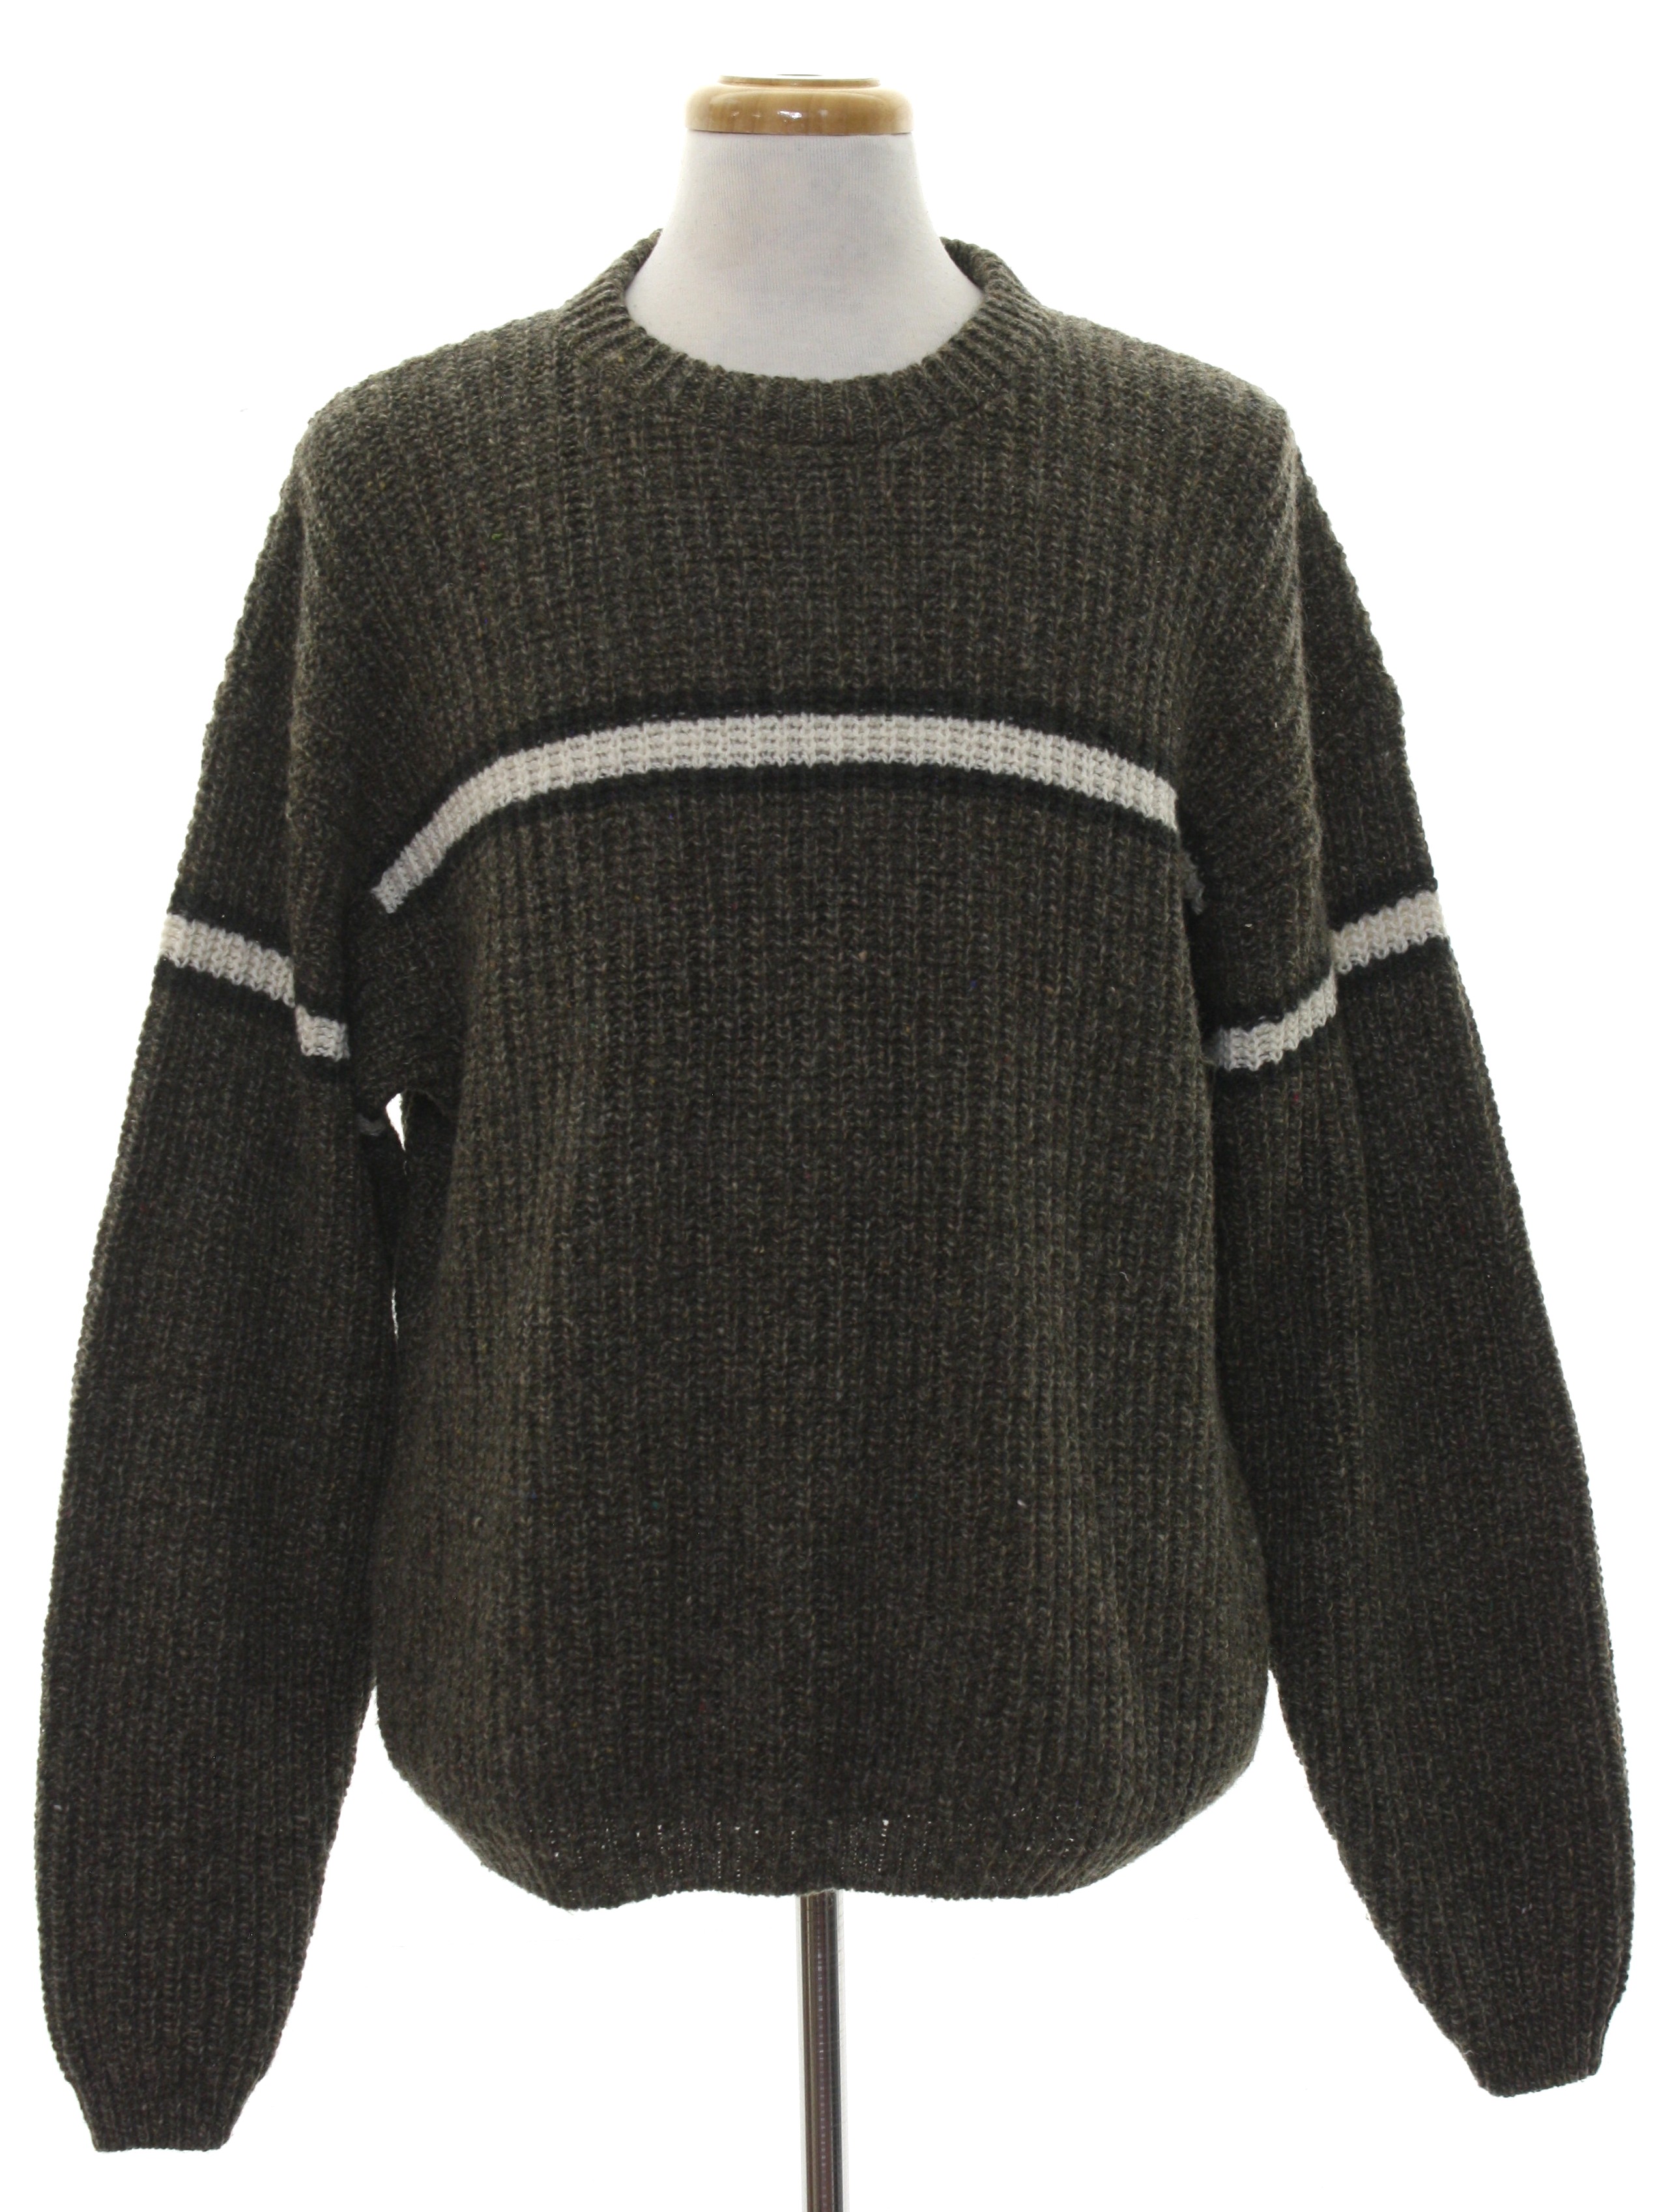 Eighties Vintage Sweater: Late 80s -Eddie Bauer- Mens heathered dark ...